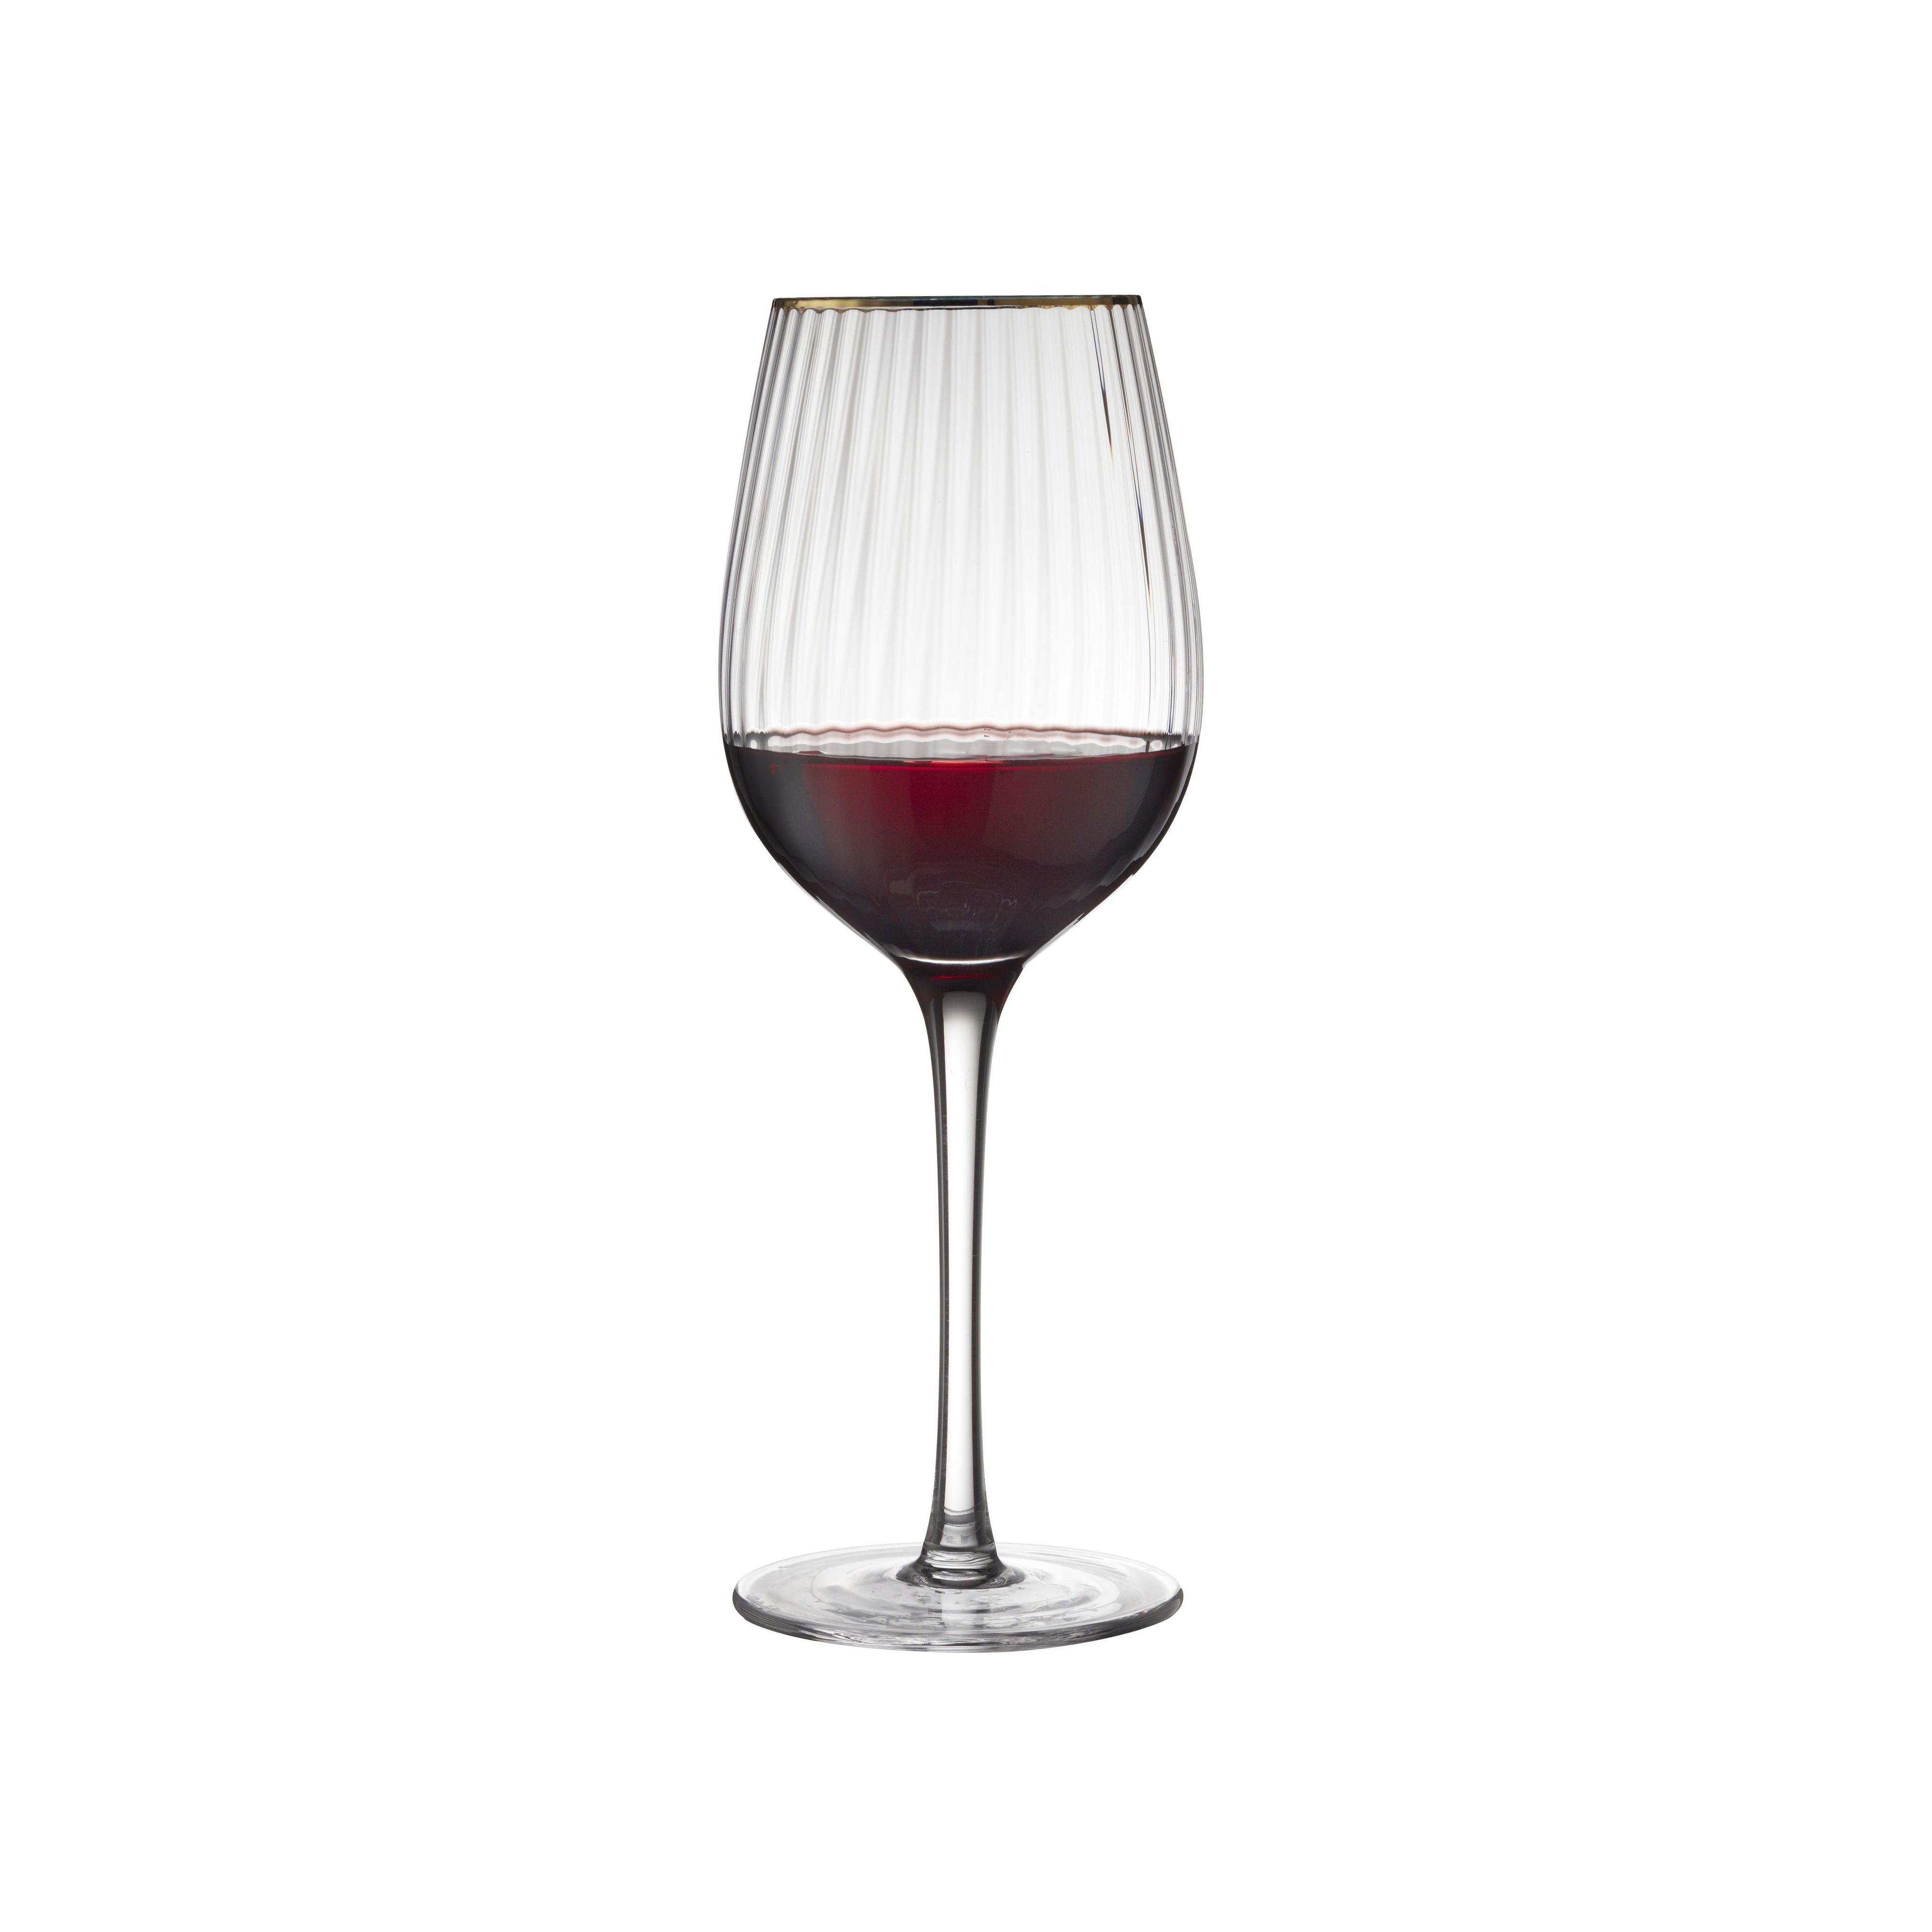 Lyngby Glas Verre à vin rouge or Palermo 40 CL 4 PCS.